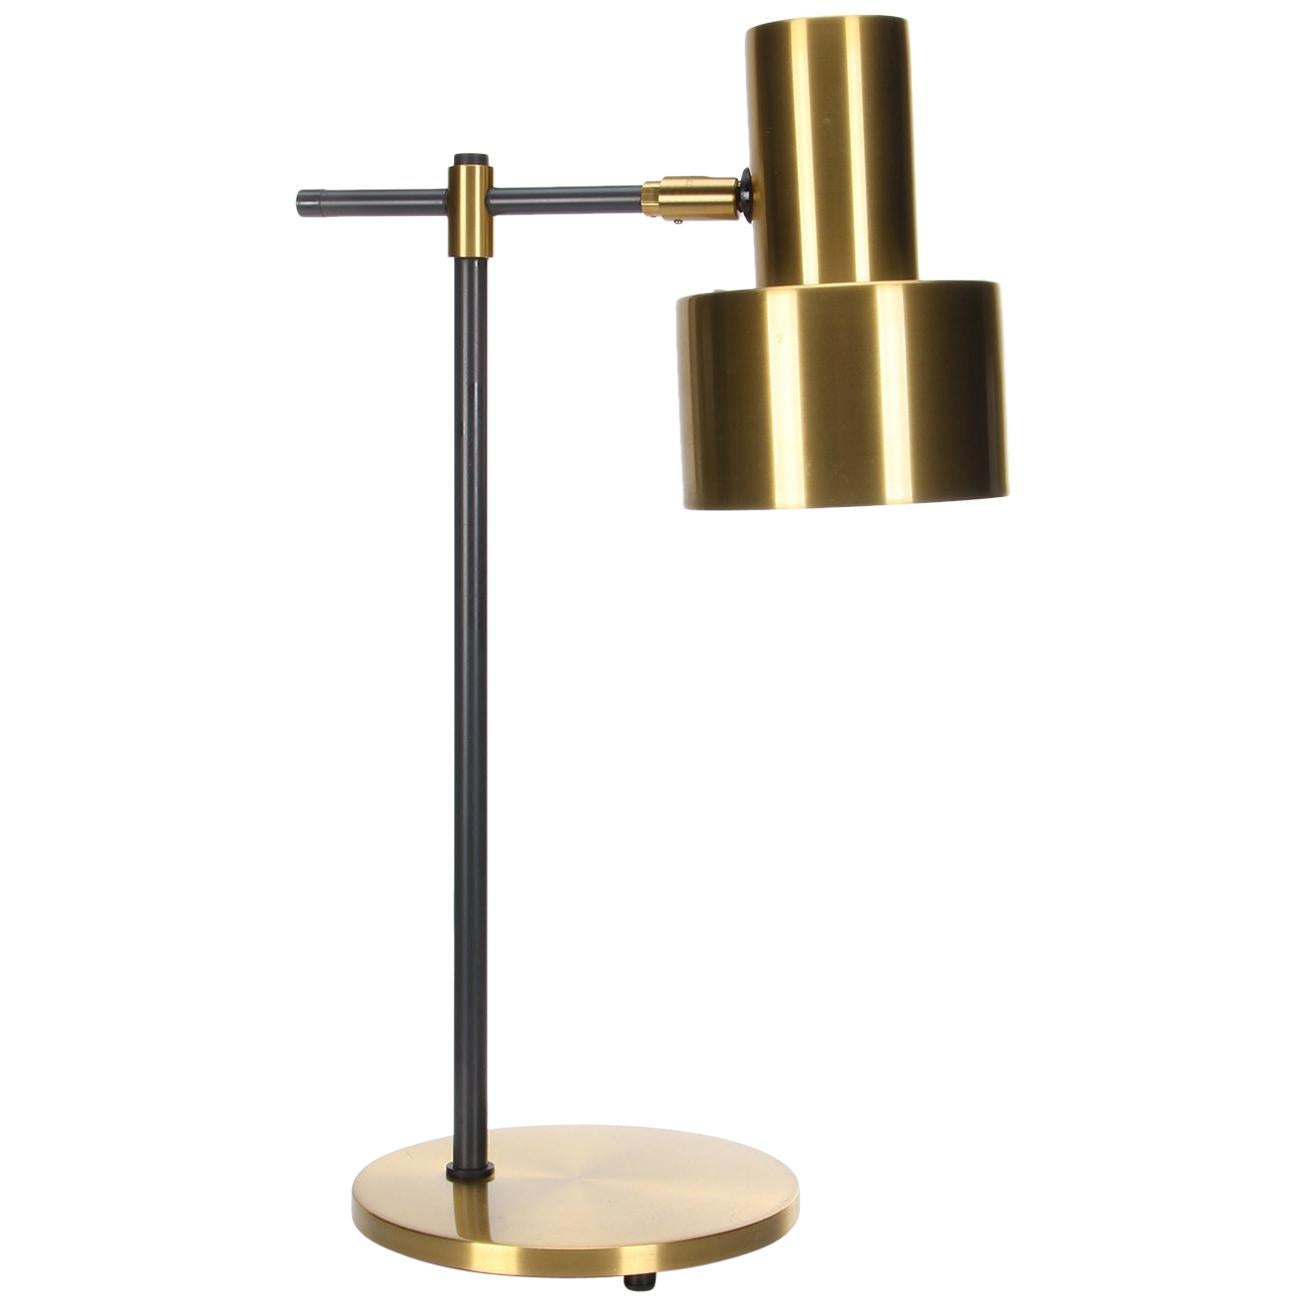 Lento Brass Table Lamp by Jo Hammerborg for Fog & Mørup in 1967